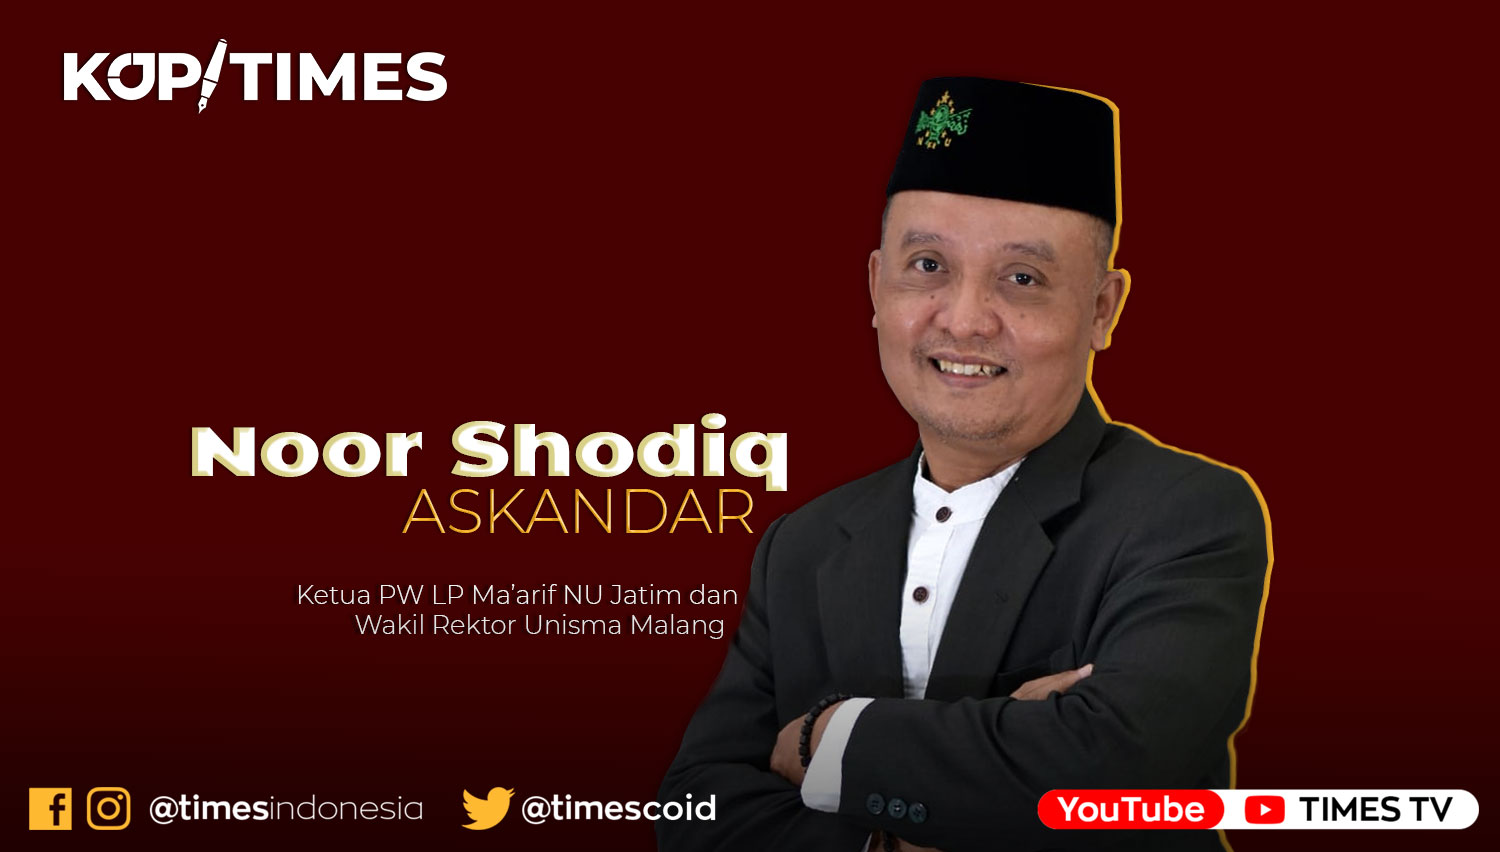 Noor Shodiq Askandar adalah Ketua PW LP Maarif NU Jatim dan Wakil Rektor 2 Unisma.